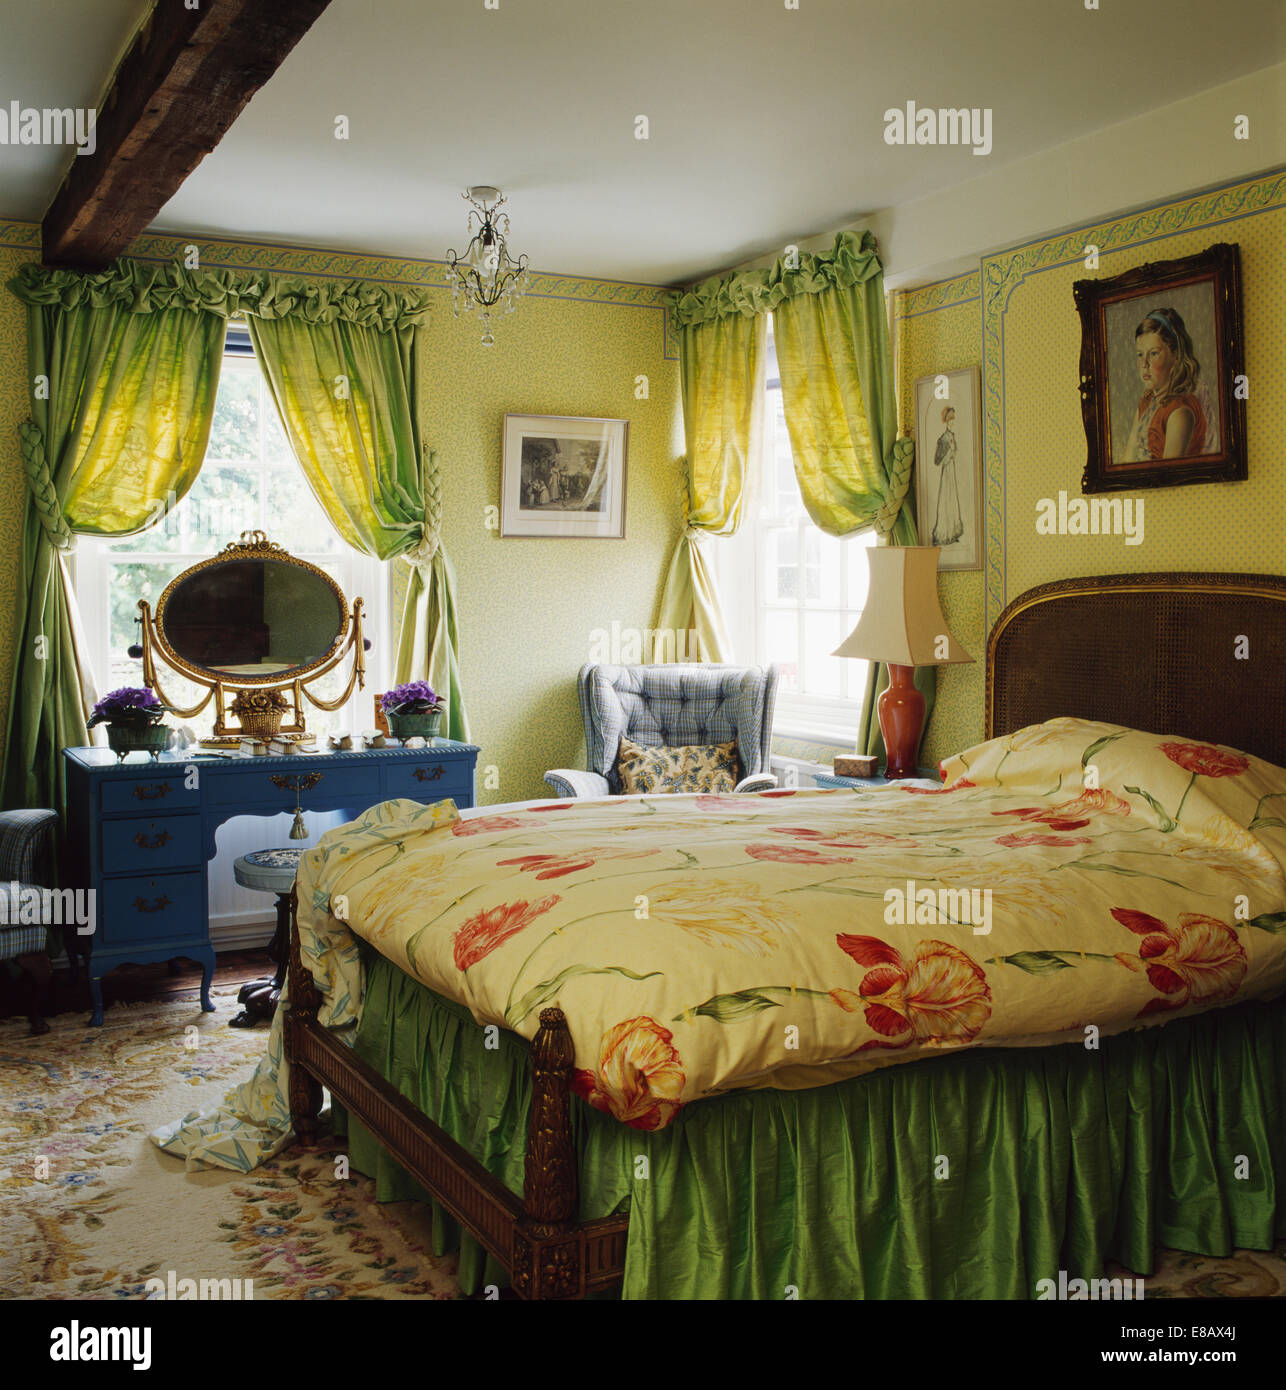 Verde pallido tende su finestra in giallo pallido camera da letto con motivi floreali e quilt valenza verde sul letto Foto Stock